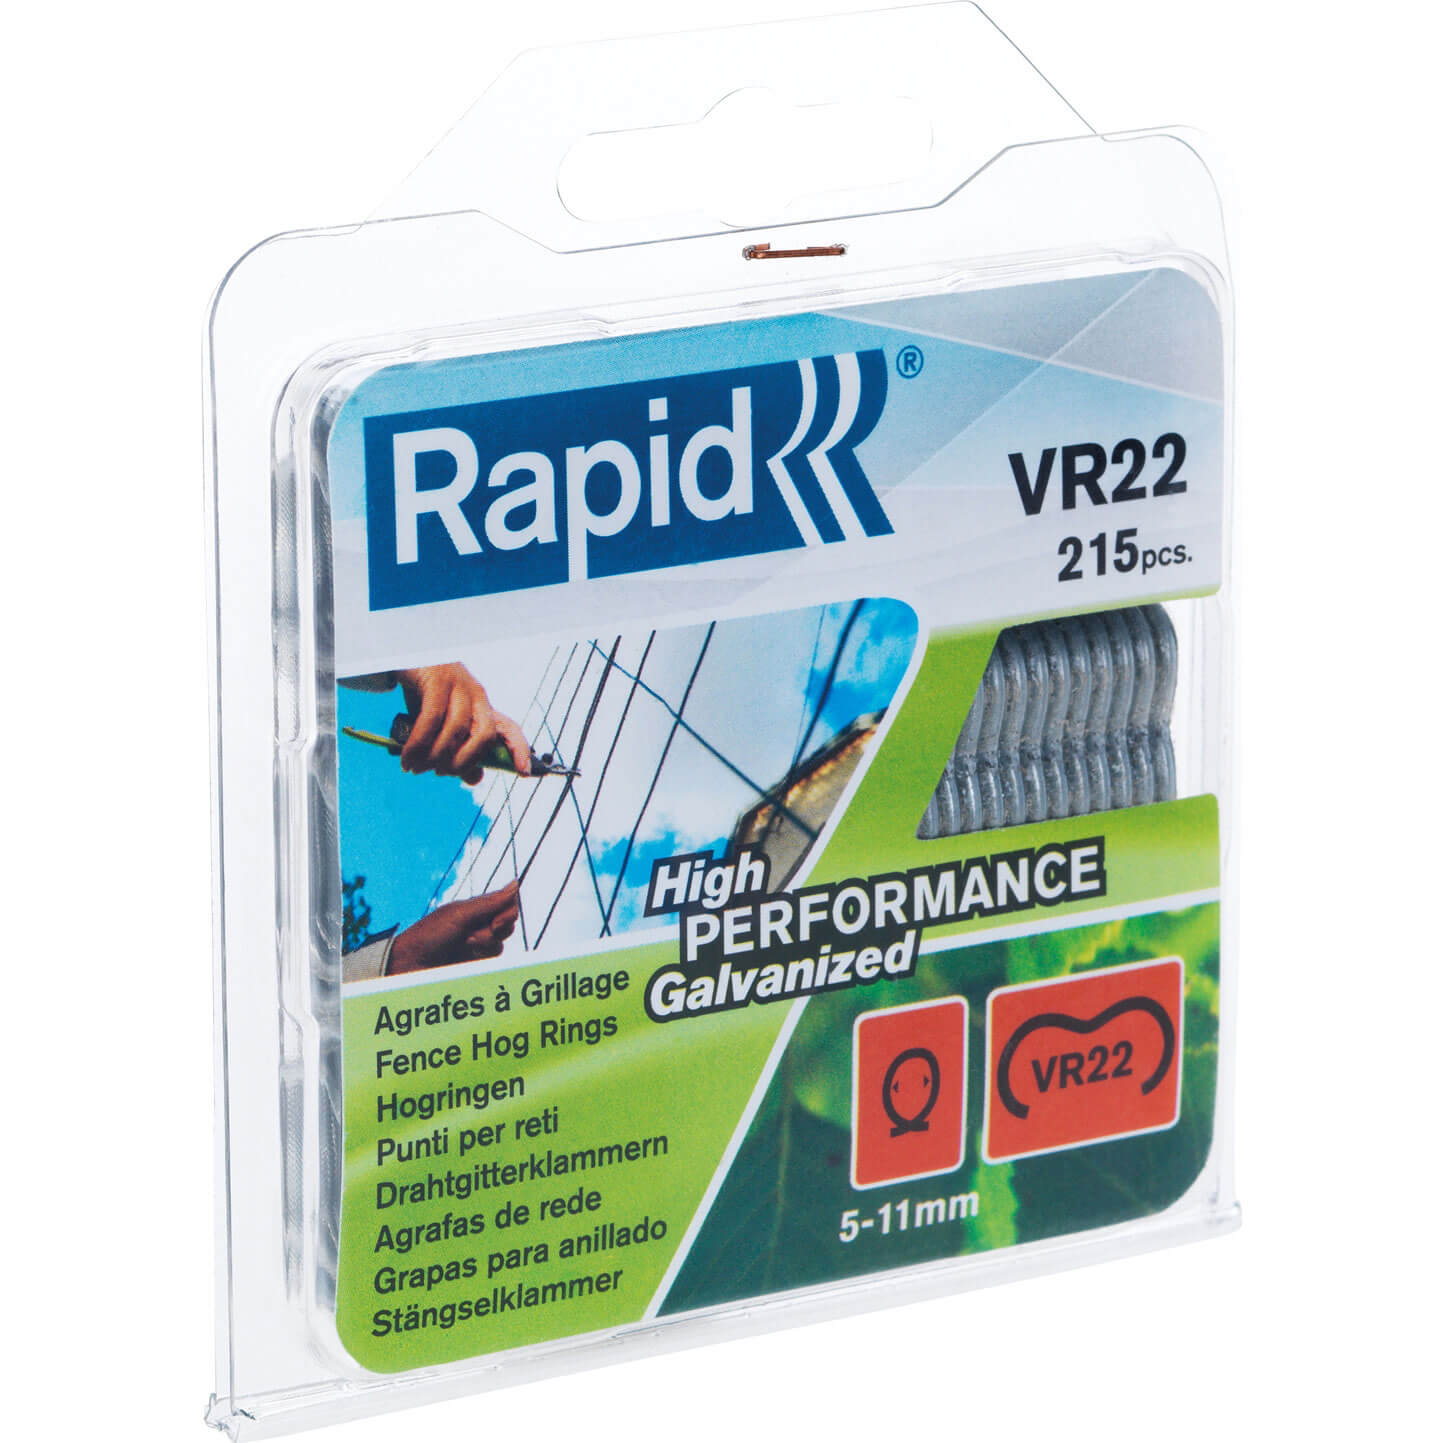 Image of Rapid VR22 Fence Hog Rings Galvanised Pack of 215